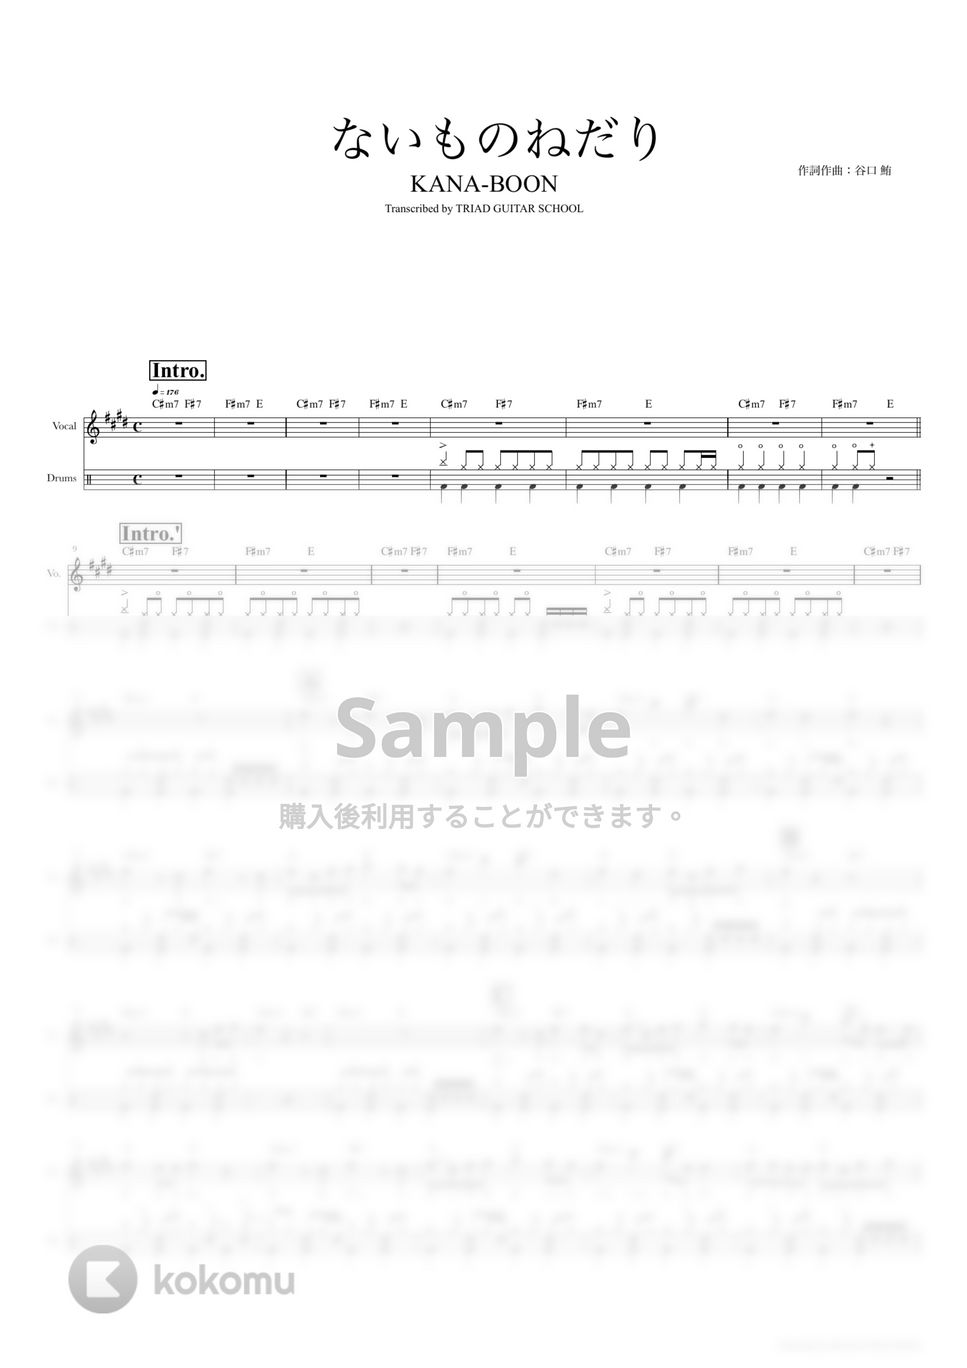 KANA-BOON - ないものねだり (ドラムスコア・歌詞・コード付き) by TRIAD GUITAR SCHOOL